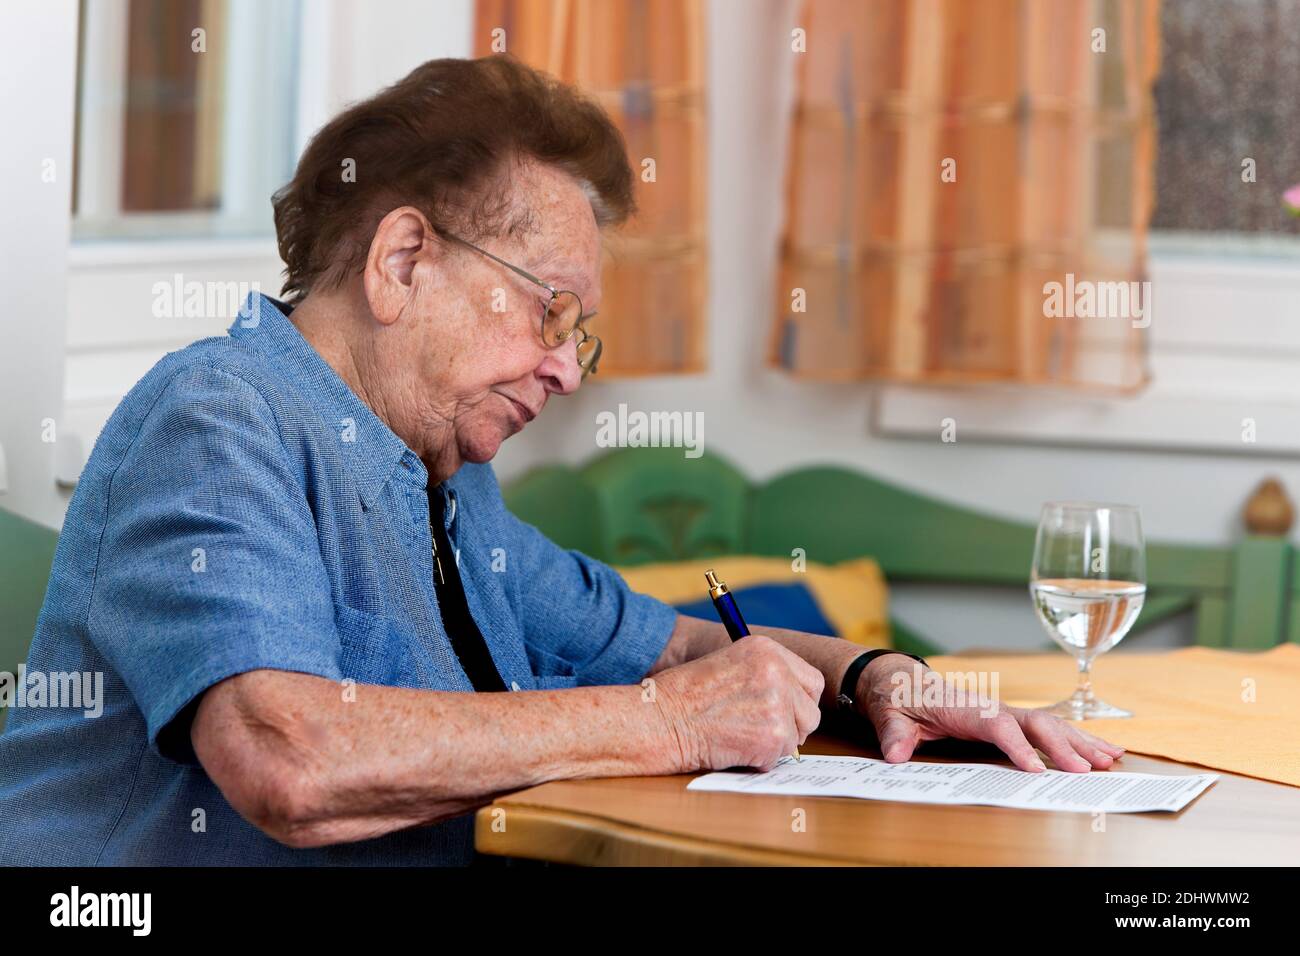 Eine alte Frau unterschreibt einen Vertrag, Senioren, Foto Stock